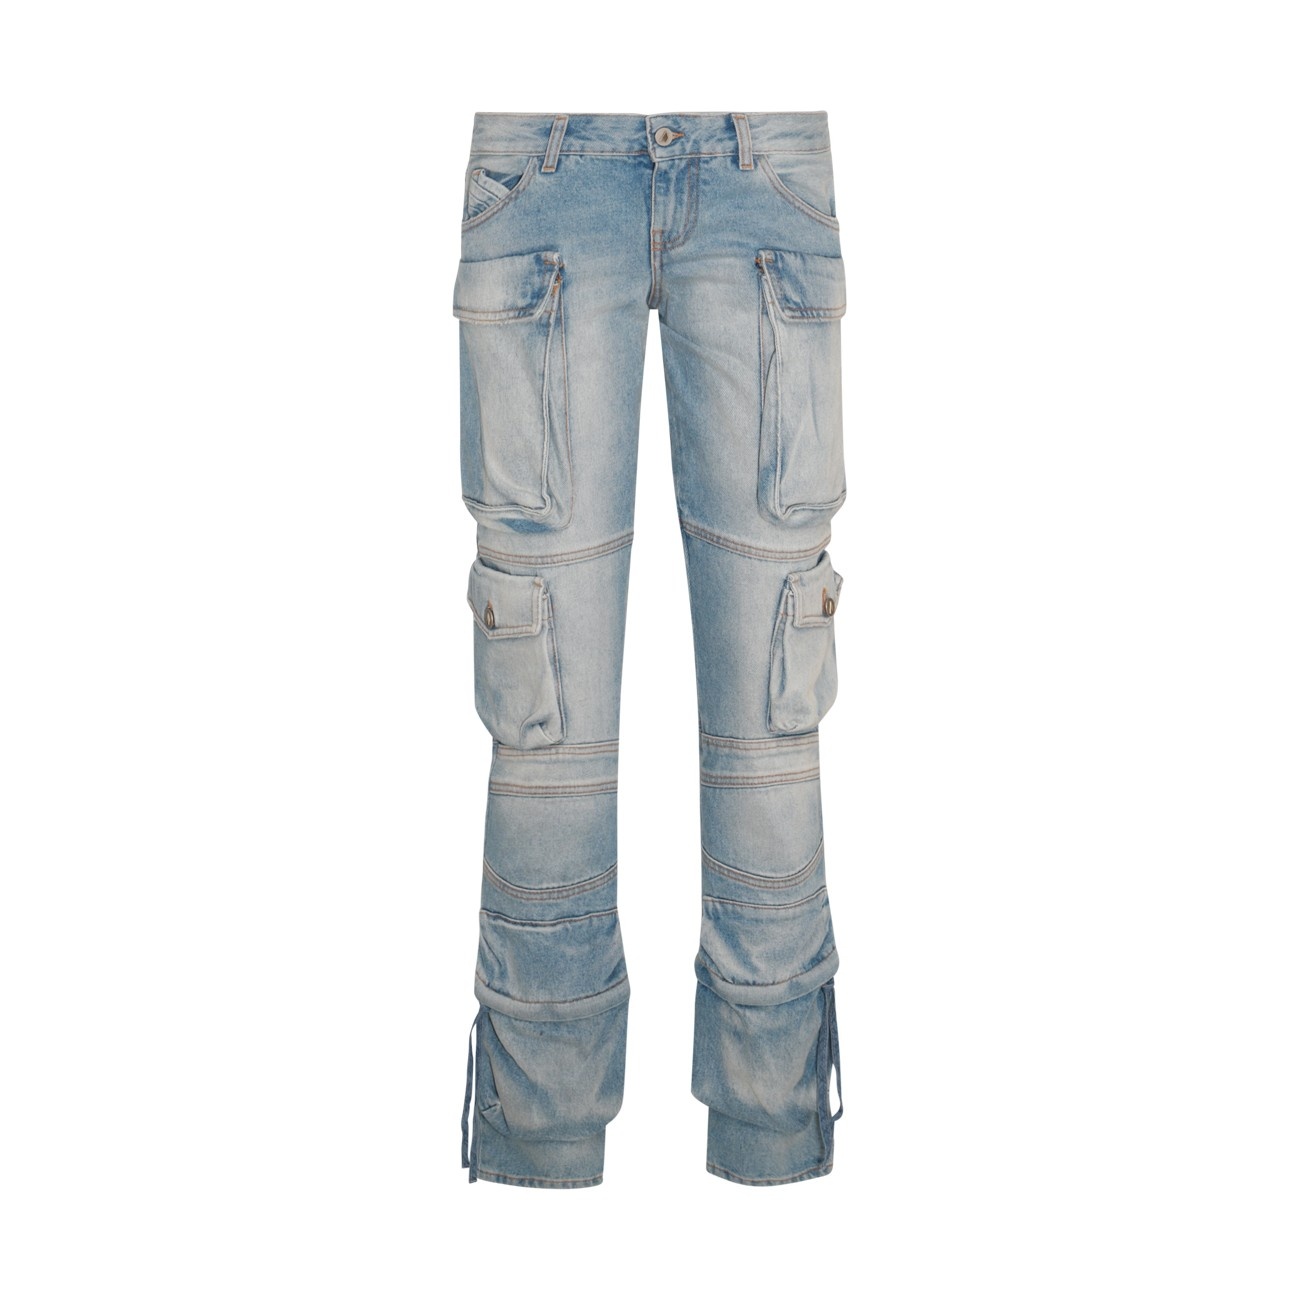 light blue cotton jeans - 1